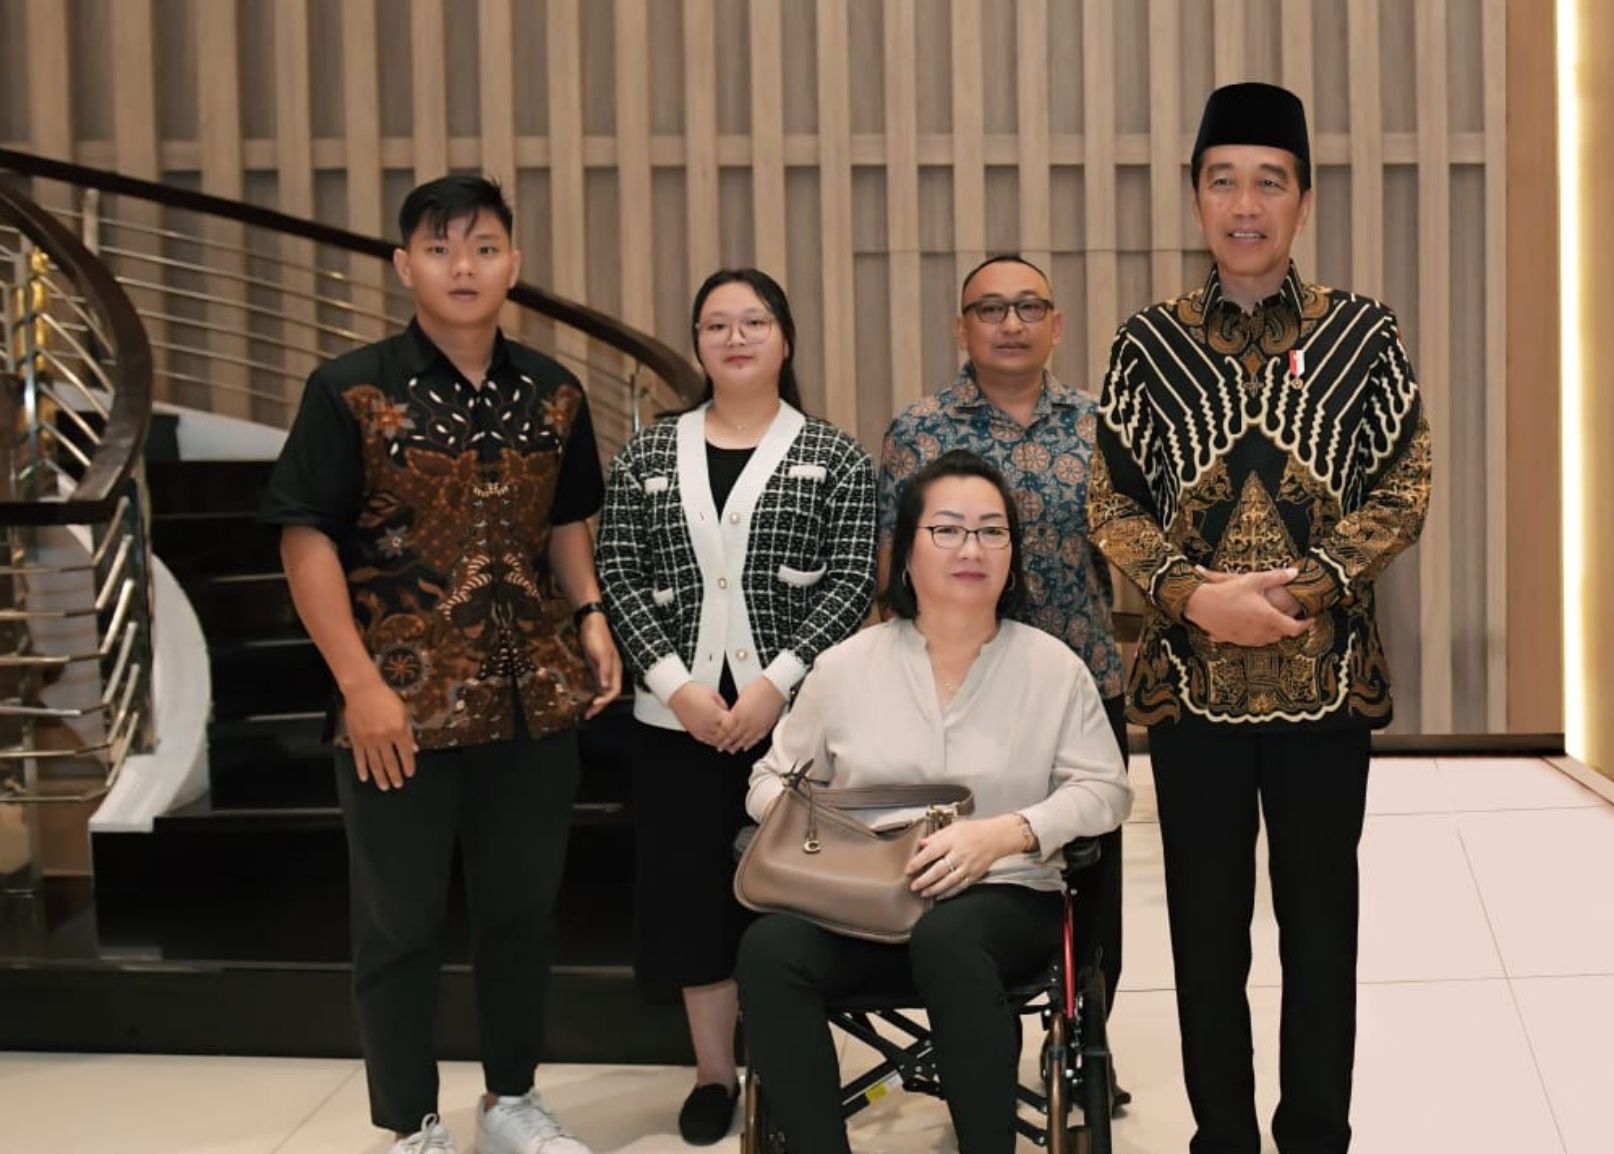 Ketua Paguyuban TUKS dan TERSUS Kalbar S. Widodo, SE dan keluarga saat bertemu Presiden Jokowi